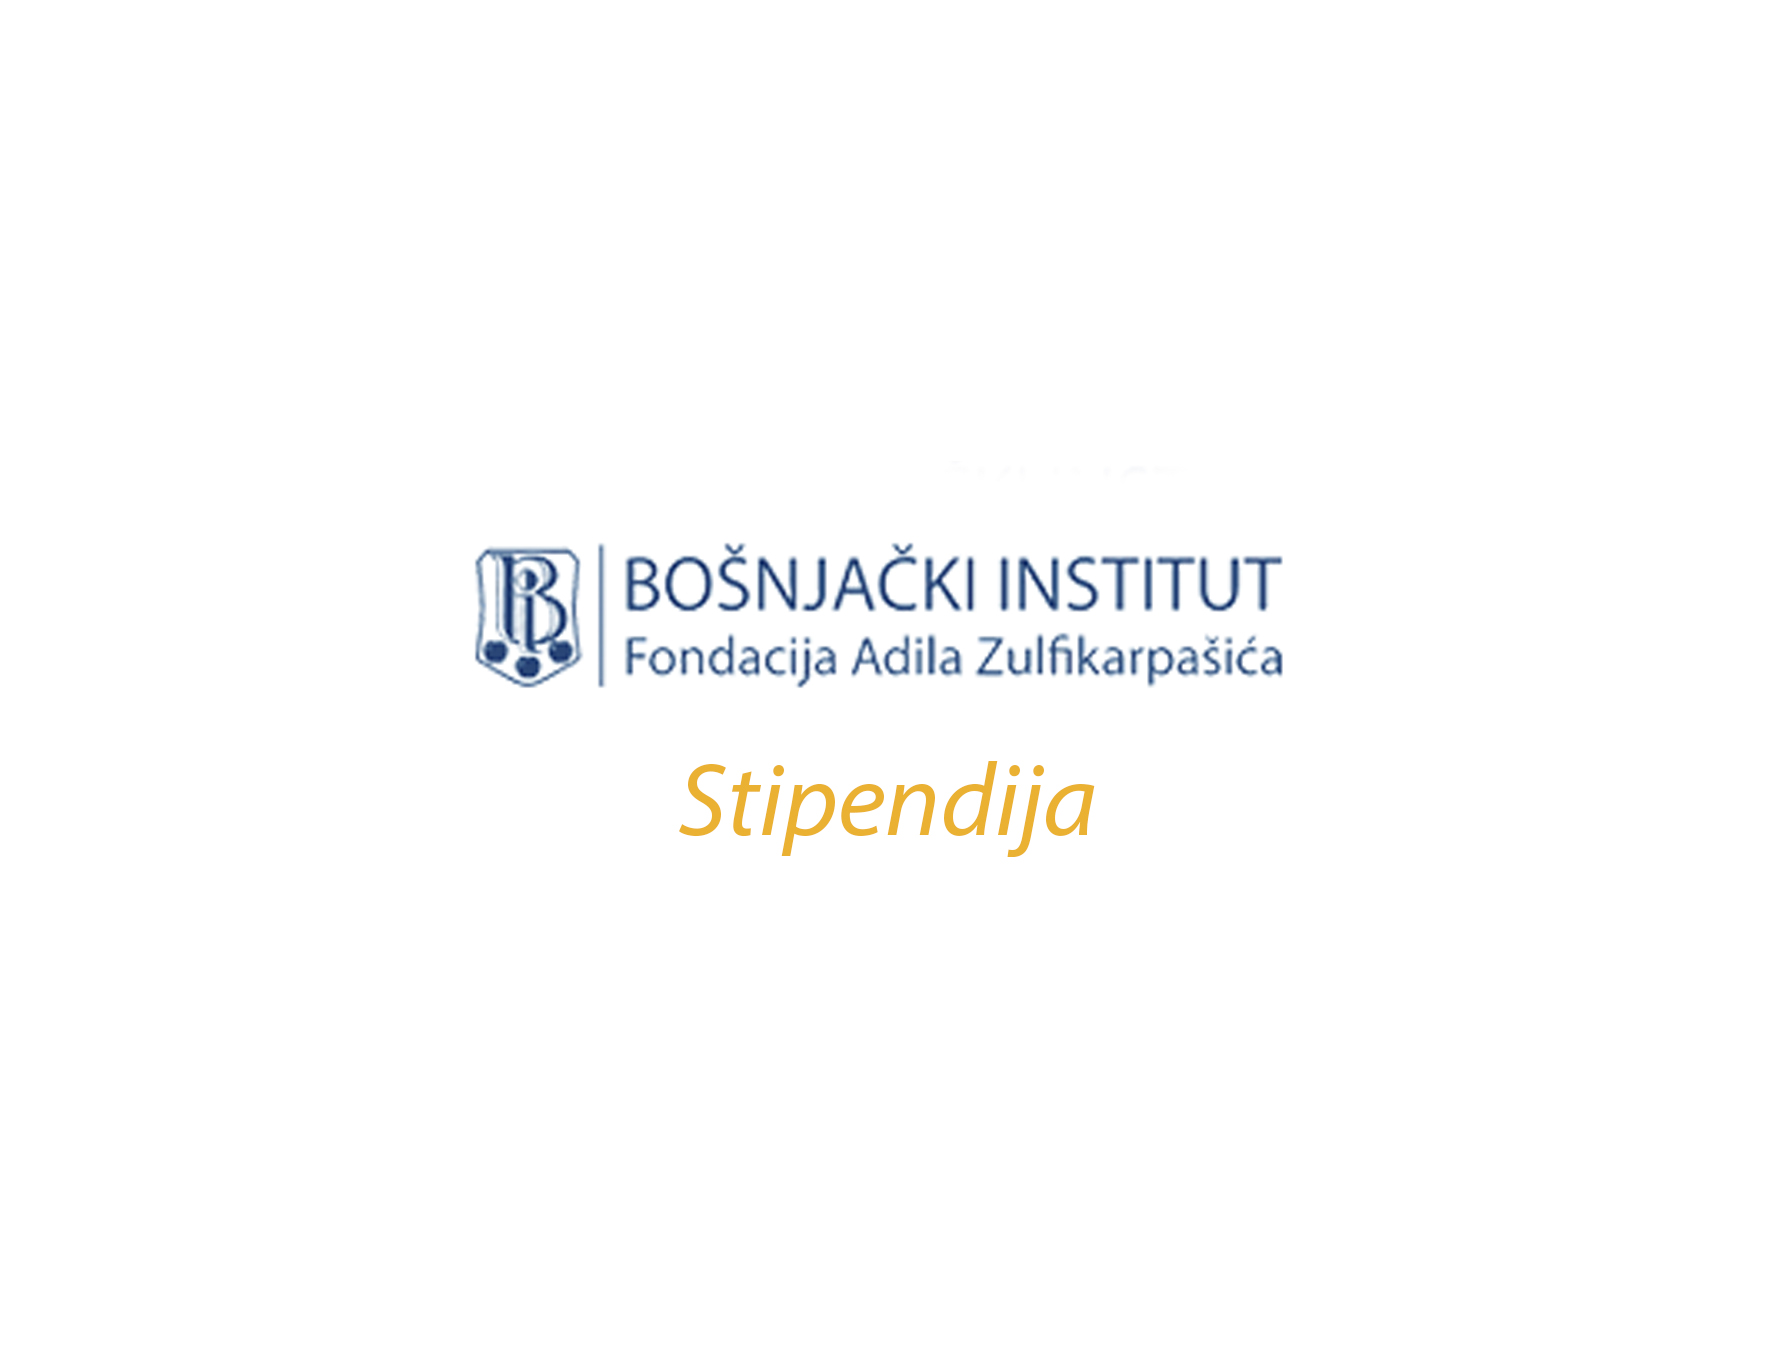 Stipendija Bošnjačkog instituta za akademsku 2019/2020. godinu